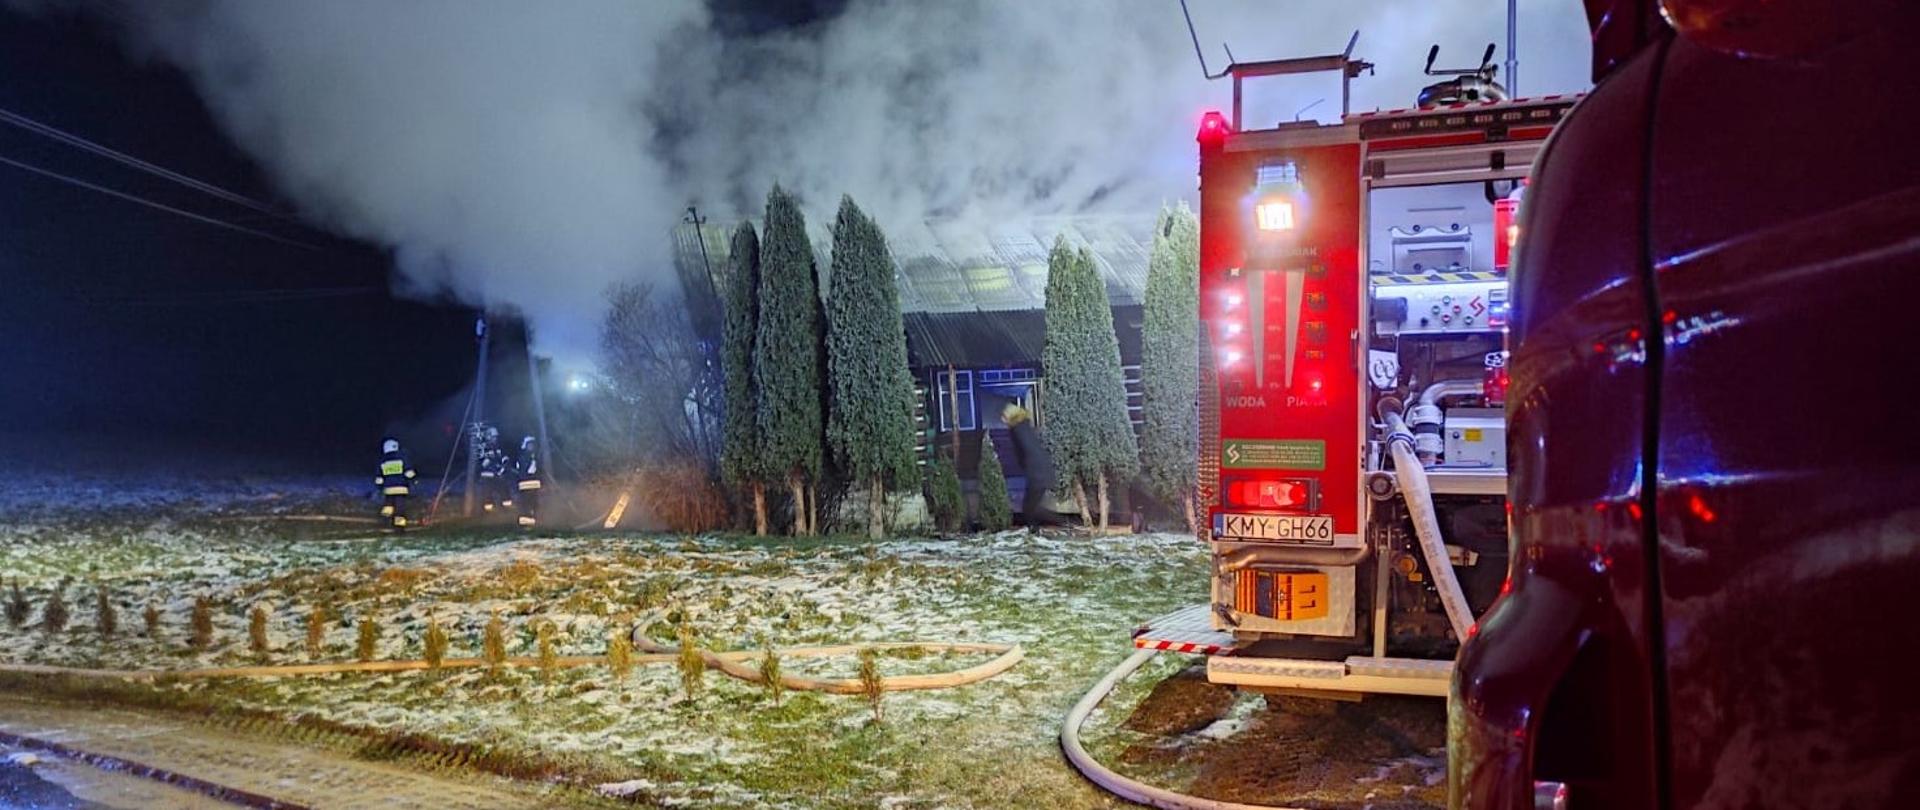 Zdjęcie przedstawia pożar budynku mieszkalnego mającego miejsce w porze nocnej. Z prawej strony zdjęcia widoczne są samochody strażackie. W oddali widoczna grupa strażaków prowadząca działania gaśnicze. Z obiektu wydobywają się duże kłęby dymu.